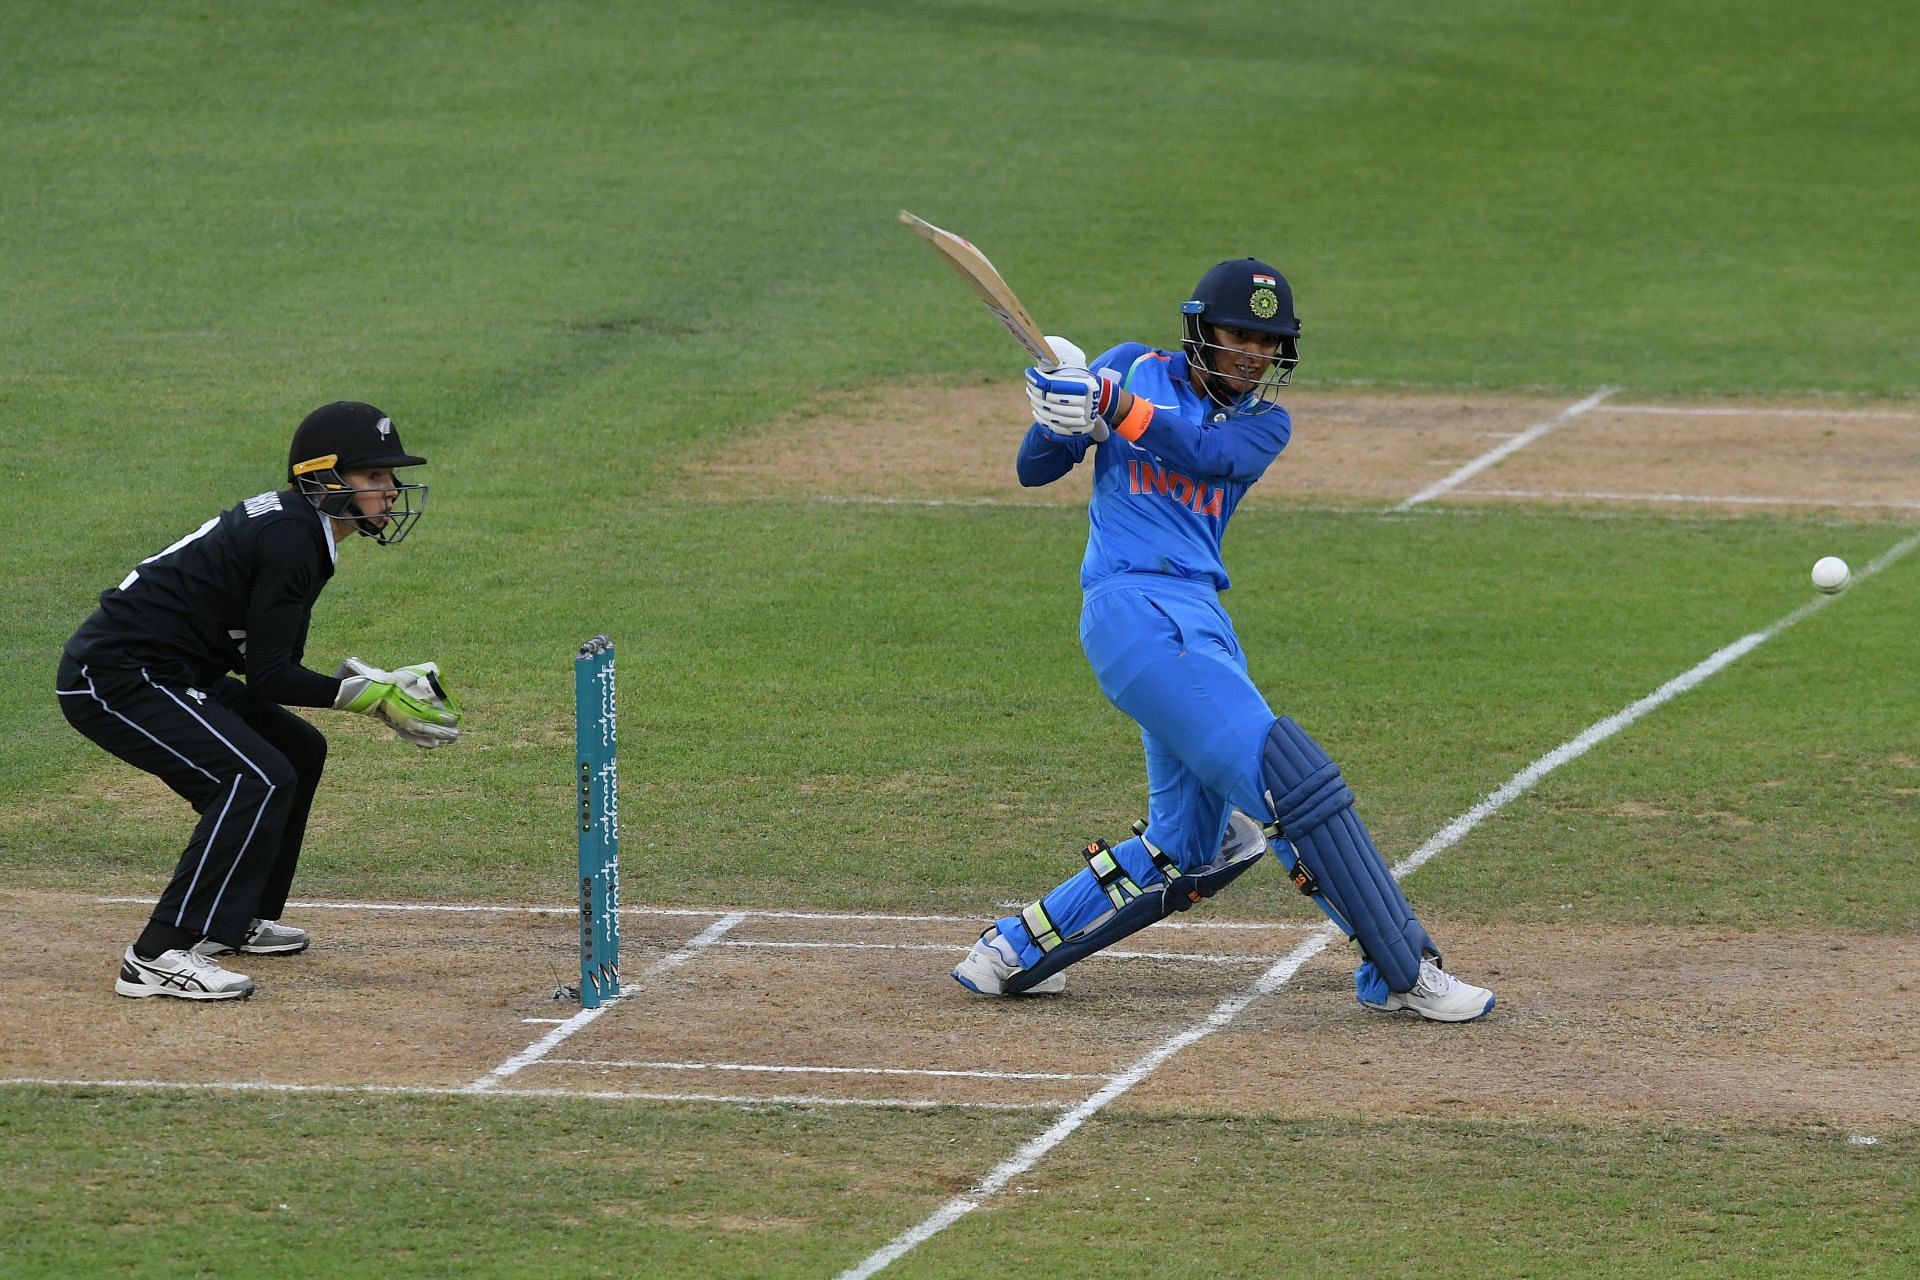 भारत और न्यूज़ीलैंड के बीच तीसरा एकदिवसीय मैच 18 फरवरी को खेला जायेगा